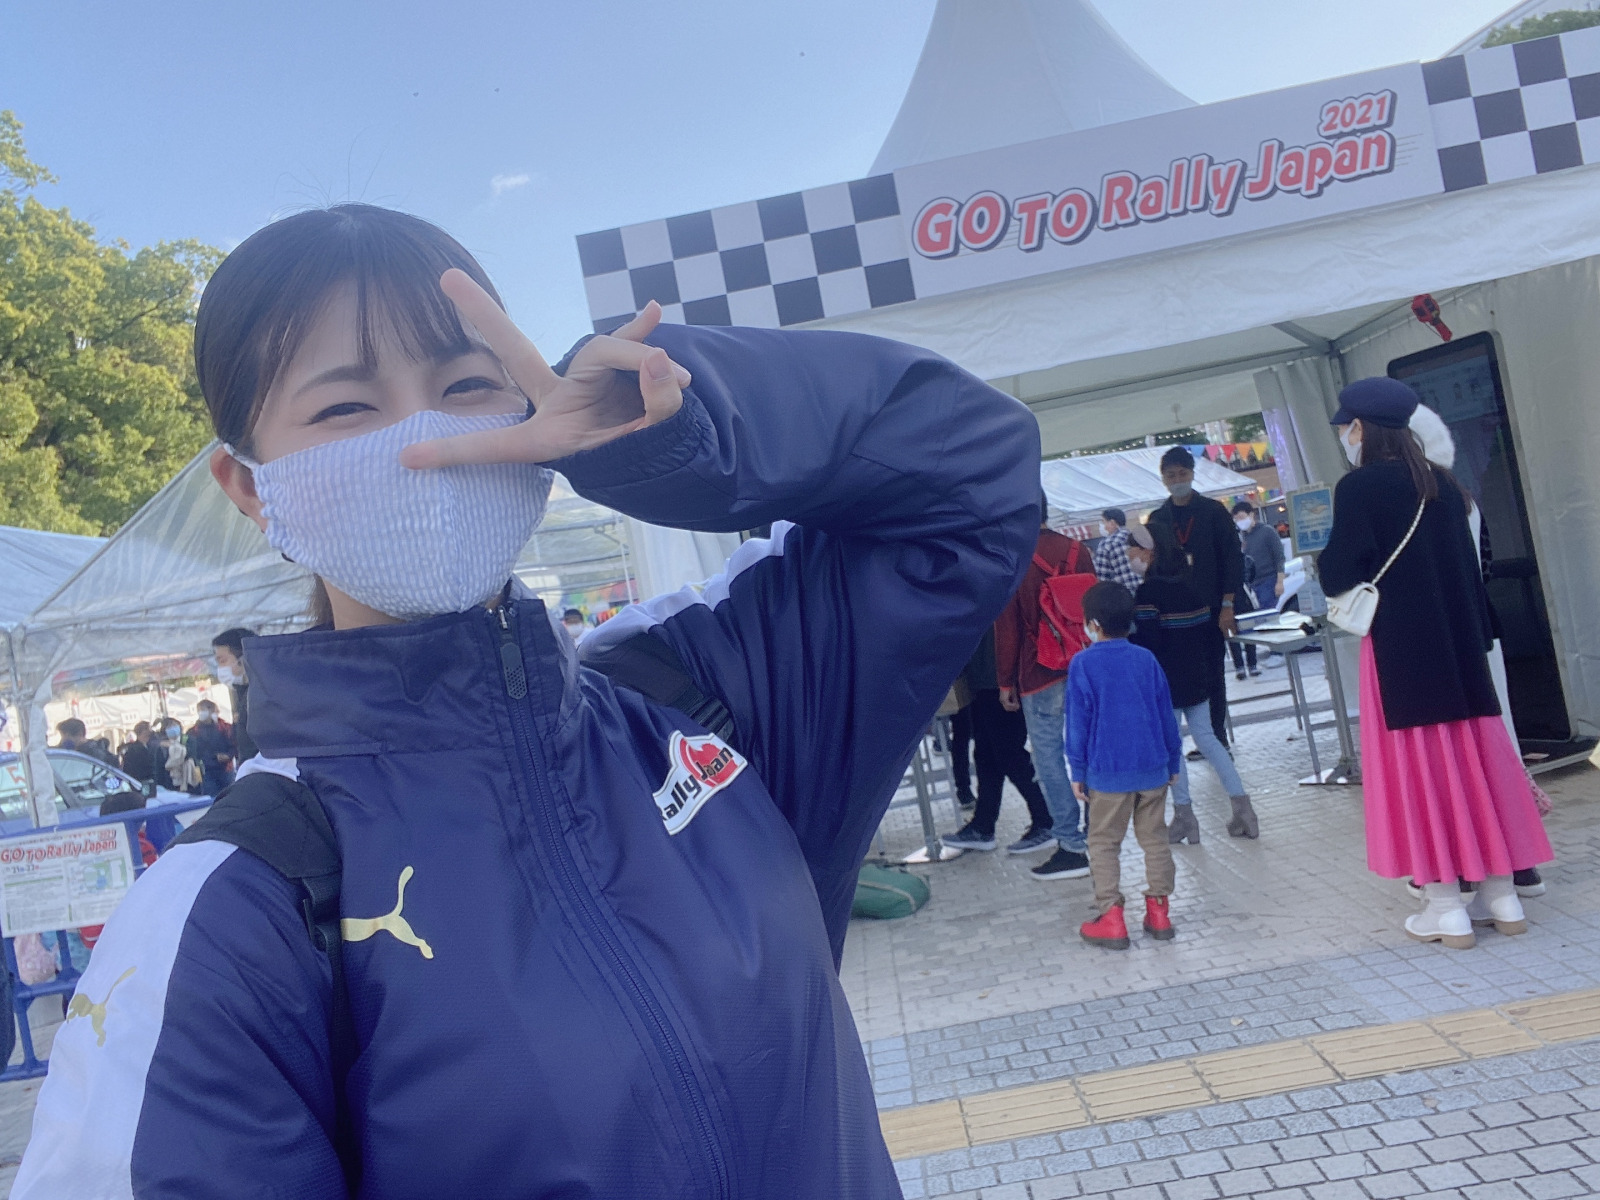 「梅本まどかがSKE48の本拠地・栄で行われた「GO TO RallyJapan2021」イベントに参加してきました☆【うめまど通信vol.26】」の1枚目の画像